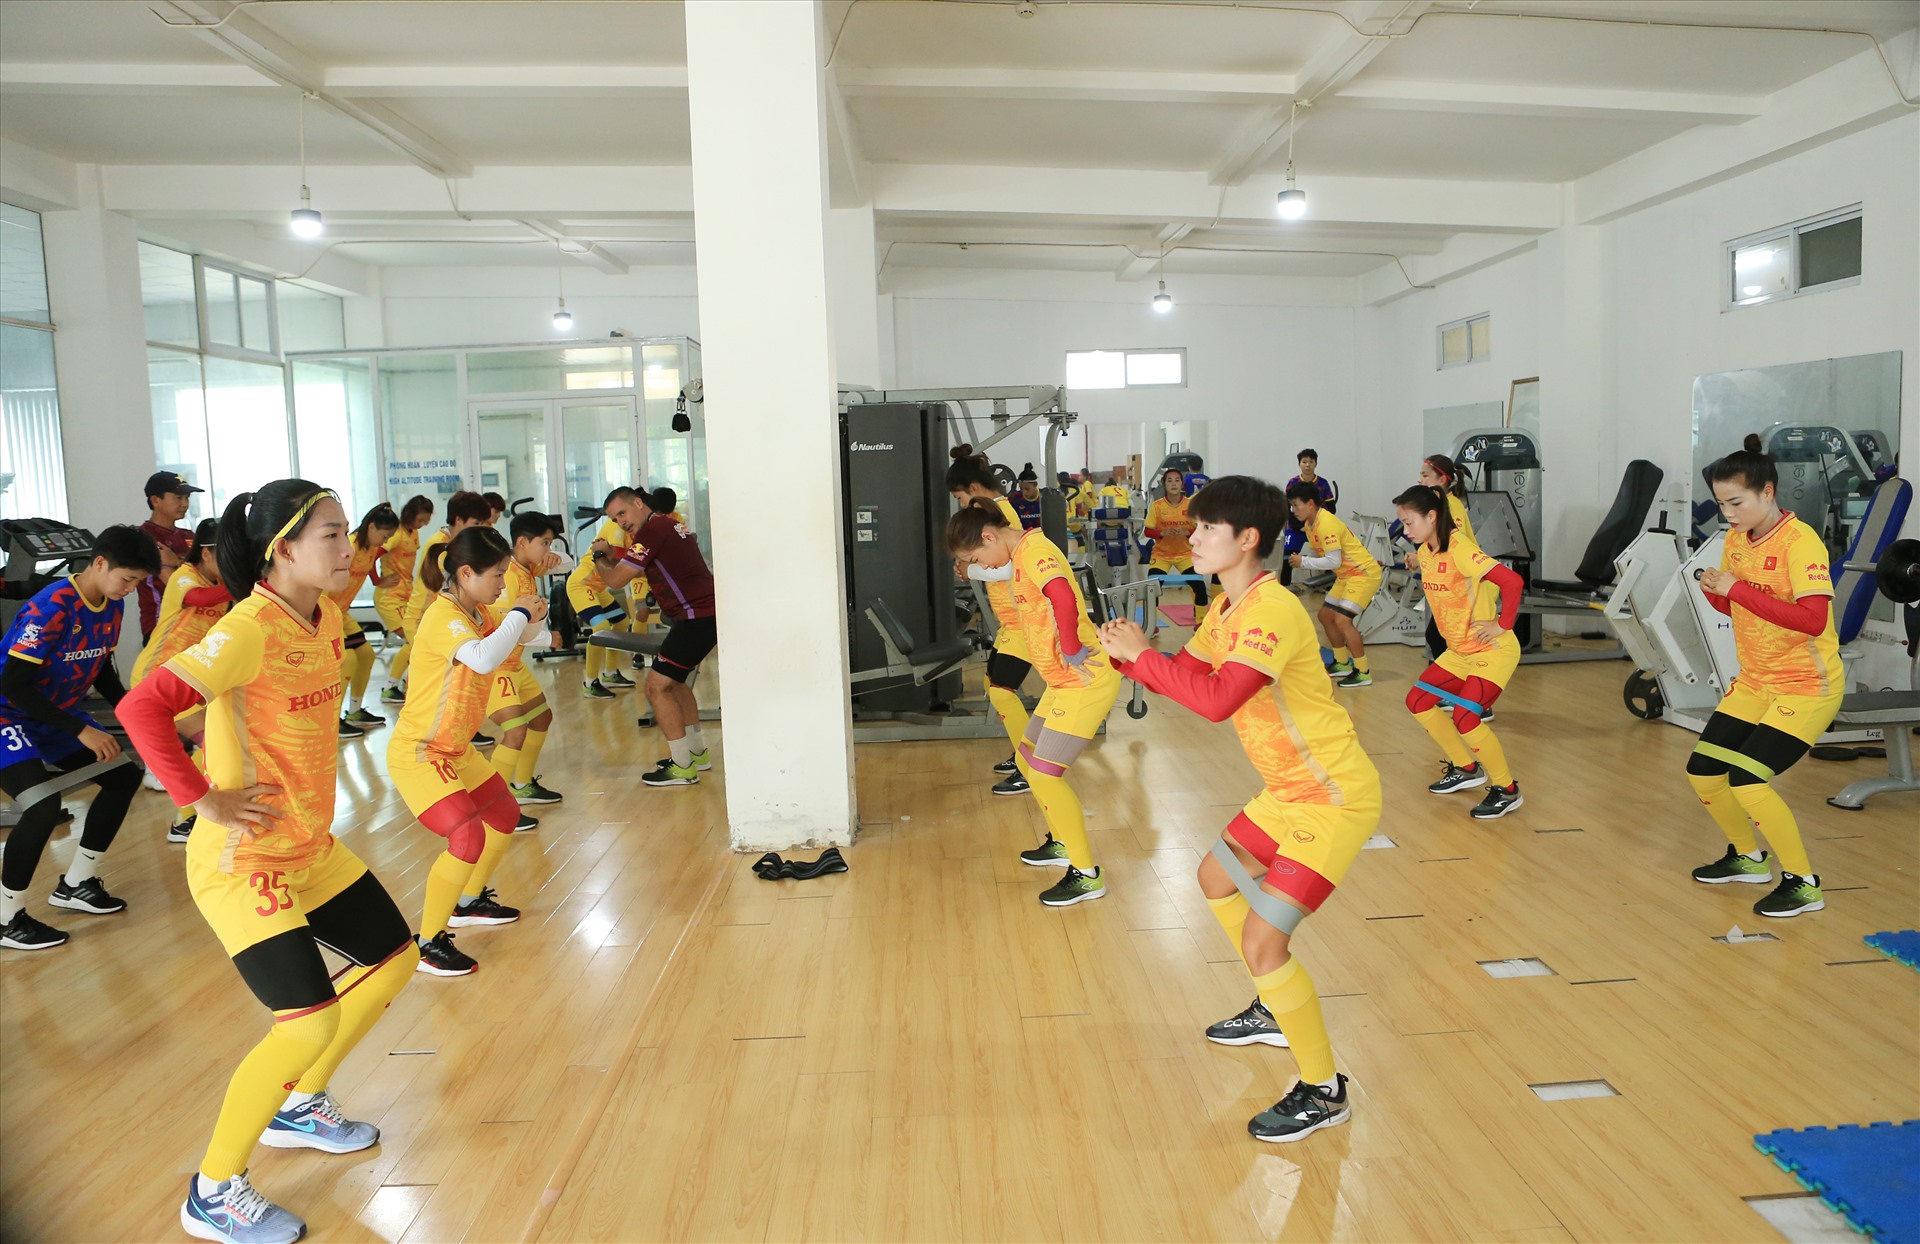 Ngày 29.6, tuyển Việt Nam có buổi tập đầu tiên tại sân Trung tâm đào tạo bóng đá trẻ Việt Nam sau khi trở về từ chuyến tập huấn tại Đức. Theo giáo án tập luyện, toàn đội trải qua buổi tập thể lực với cường độ cao. 